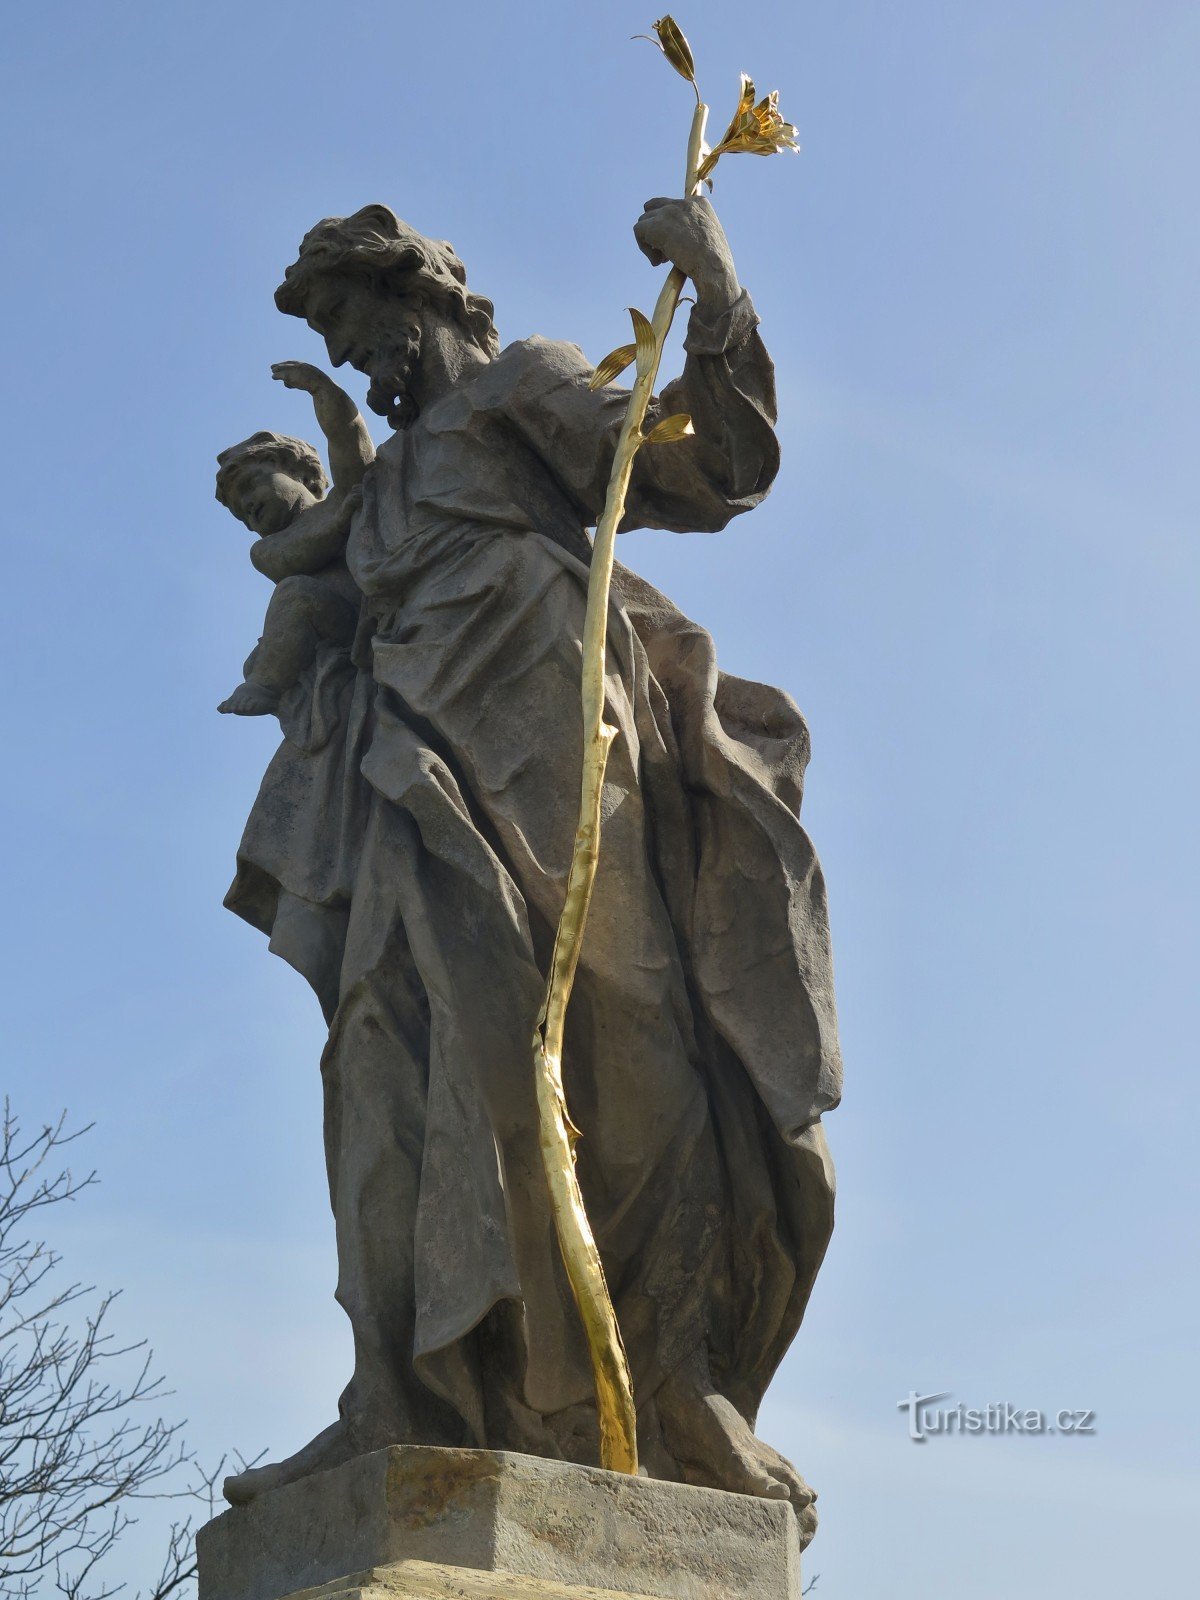 Knínice (perto de Boskovice) - estátua de St. Joseph